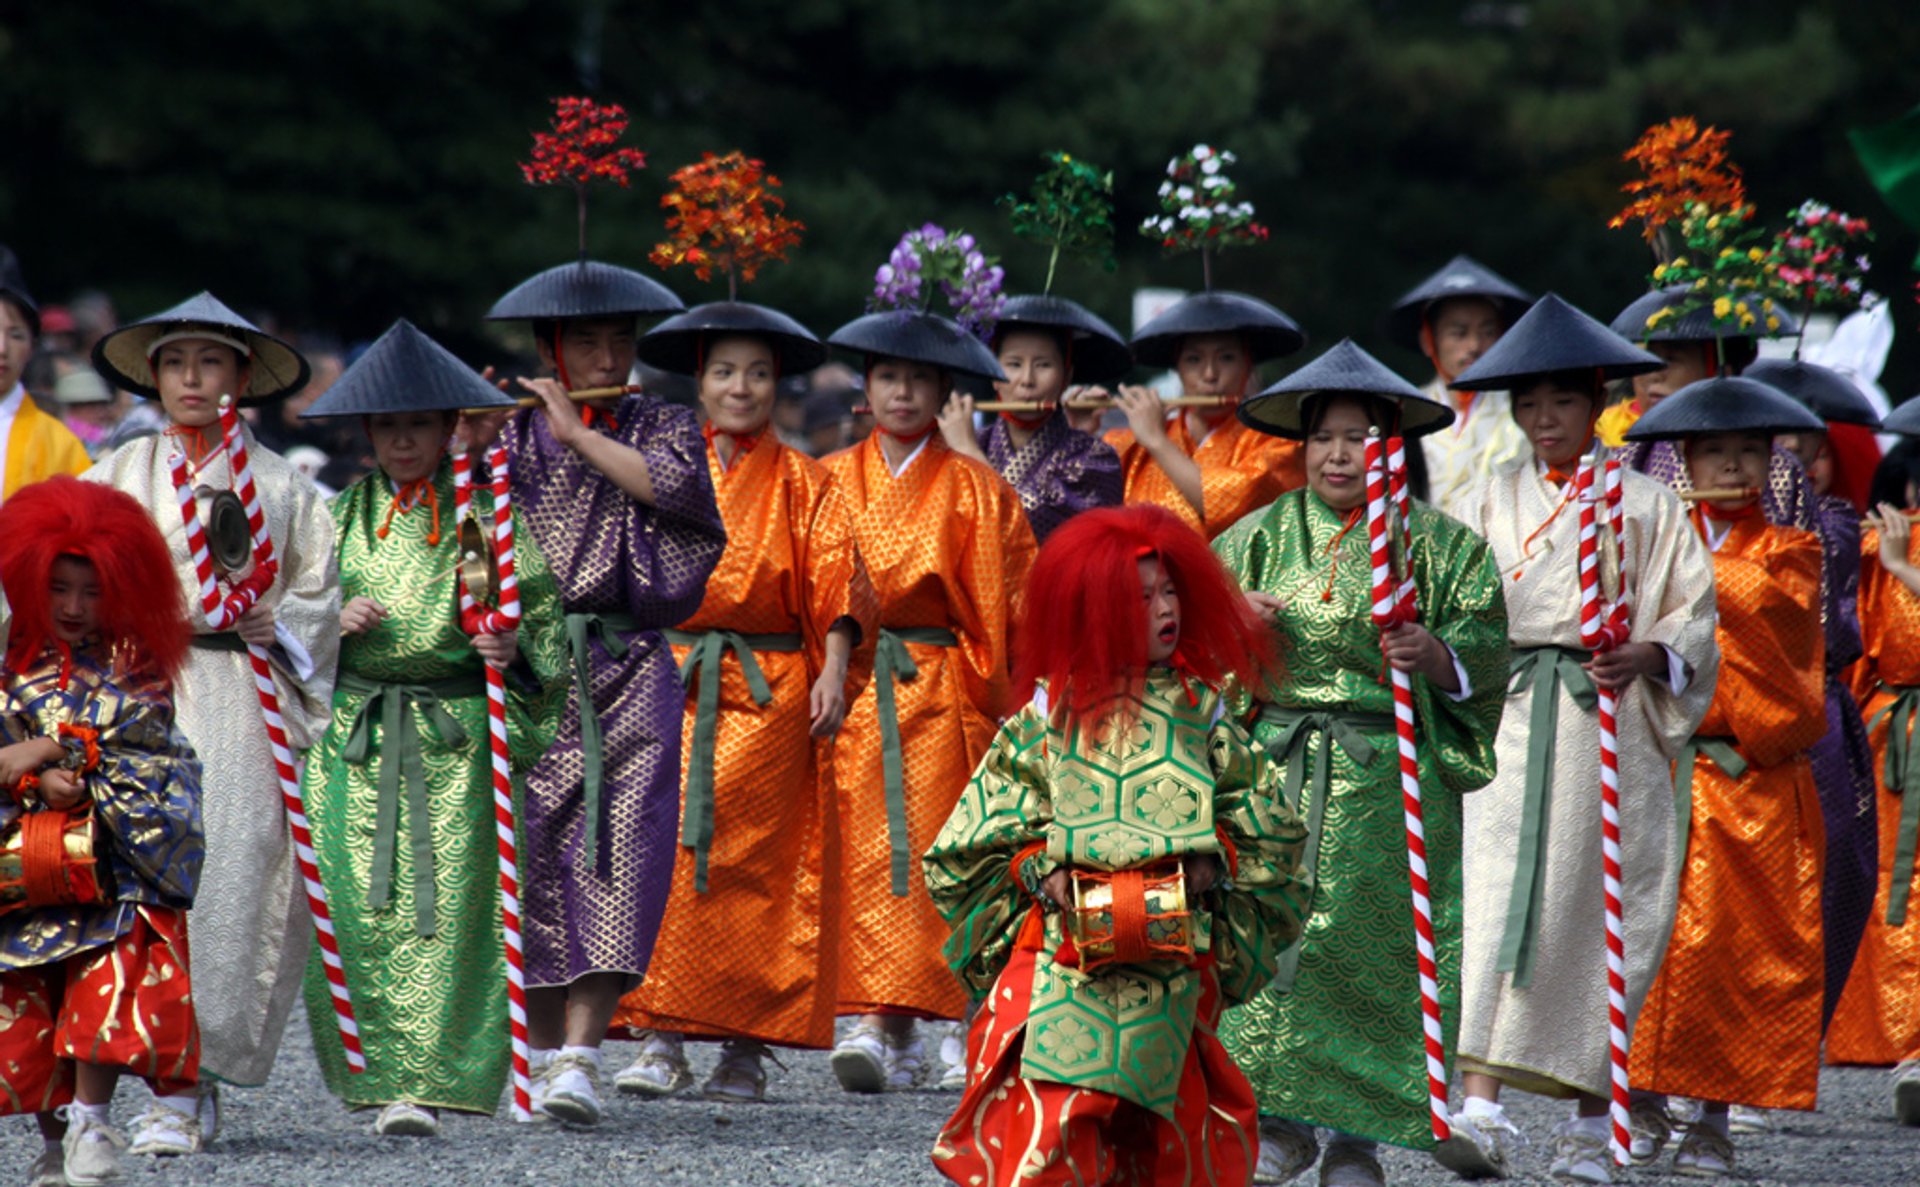 kyoto-jidai-matsuri-festival